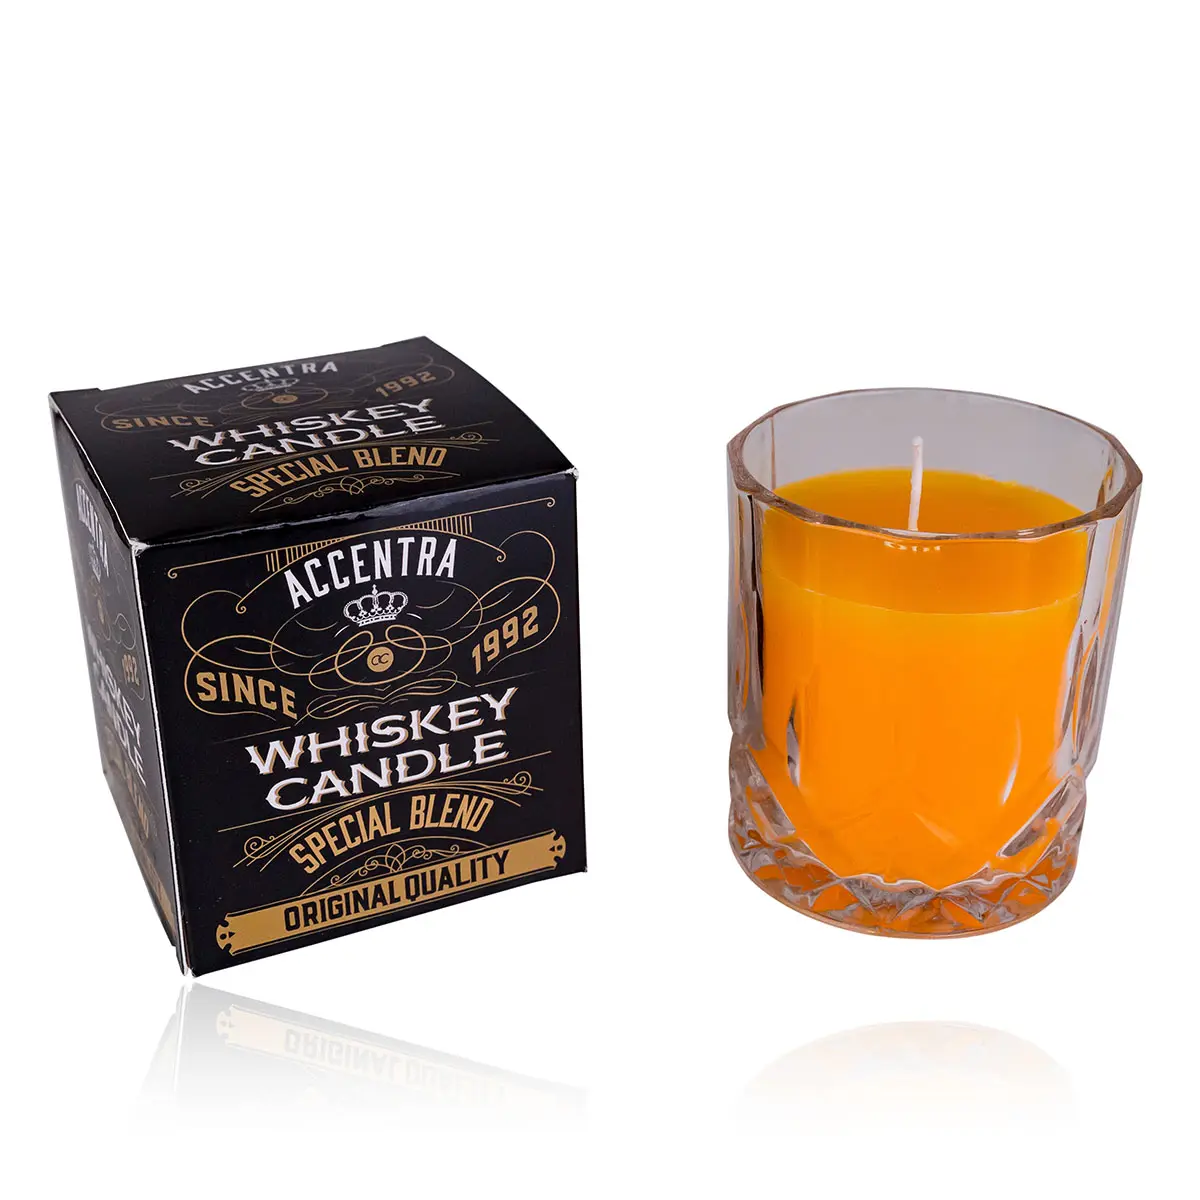 Accentra duftkerze WHISKEY in Glas mit Geschenkbox, 360 g, 8,5 × 7 cm, Duft: Whiskey, Farbe: orange